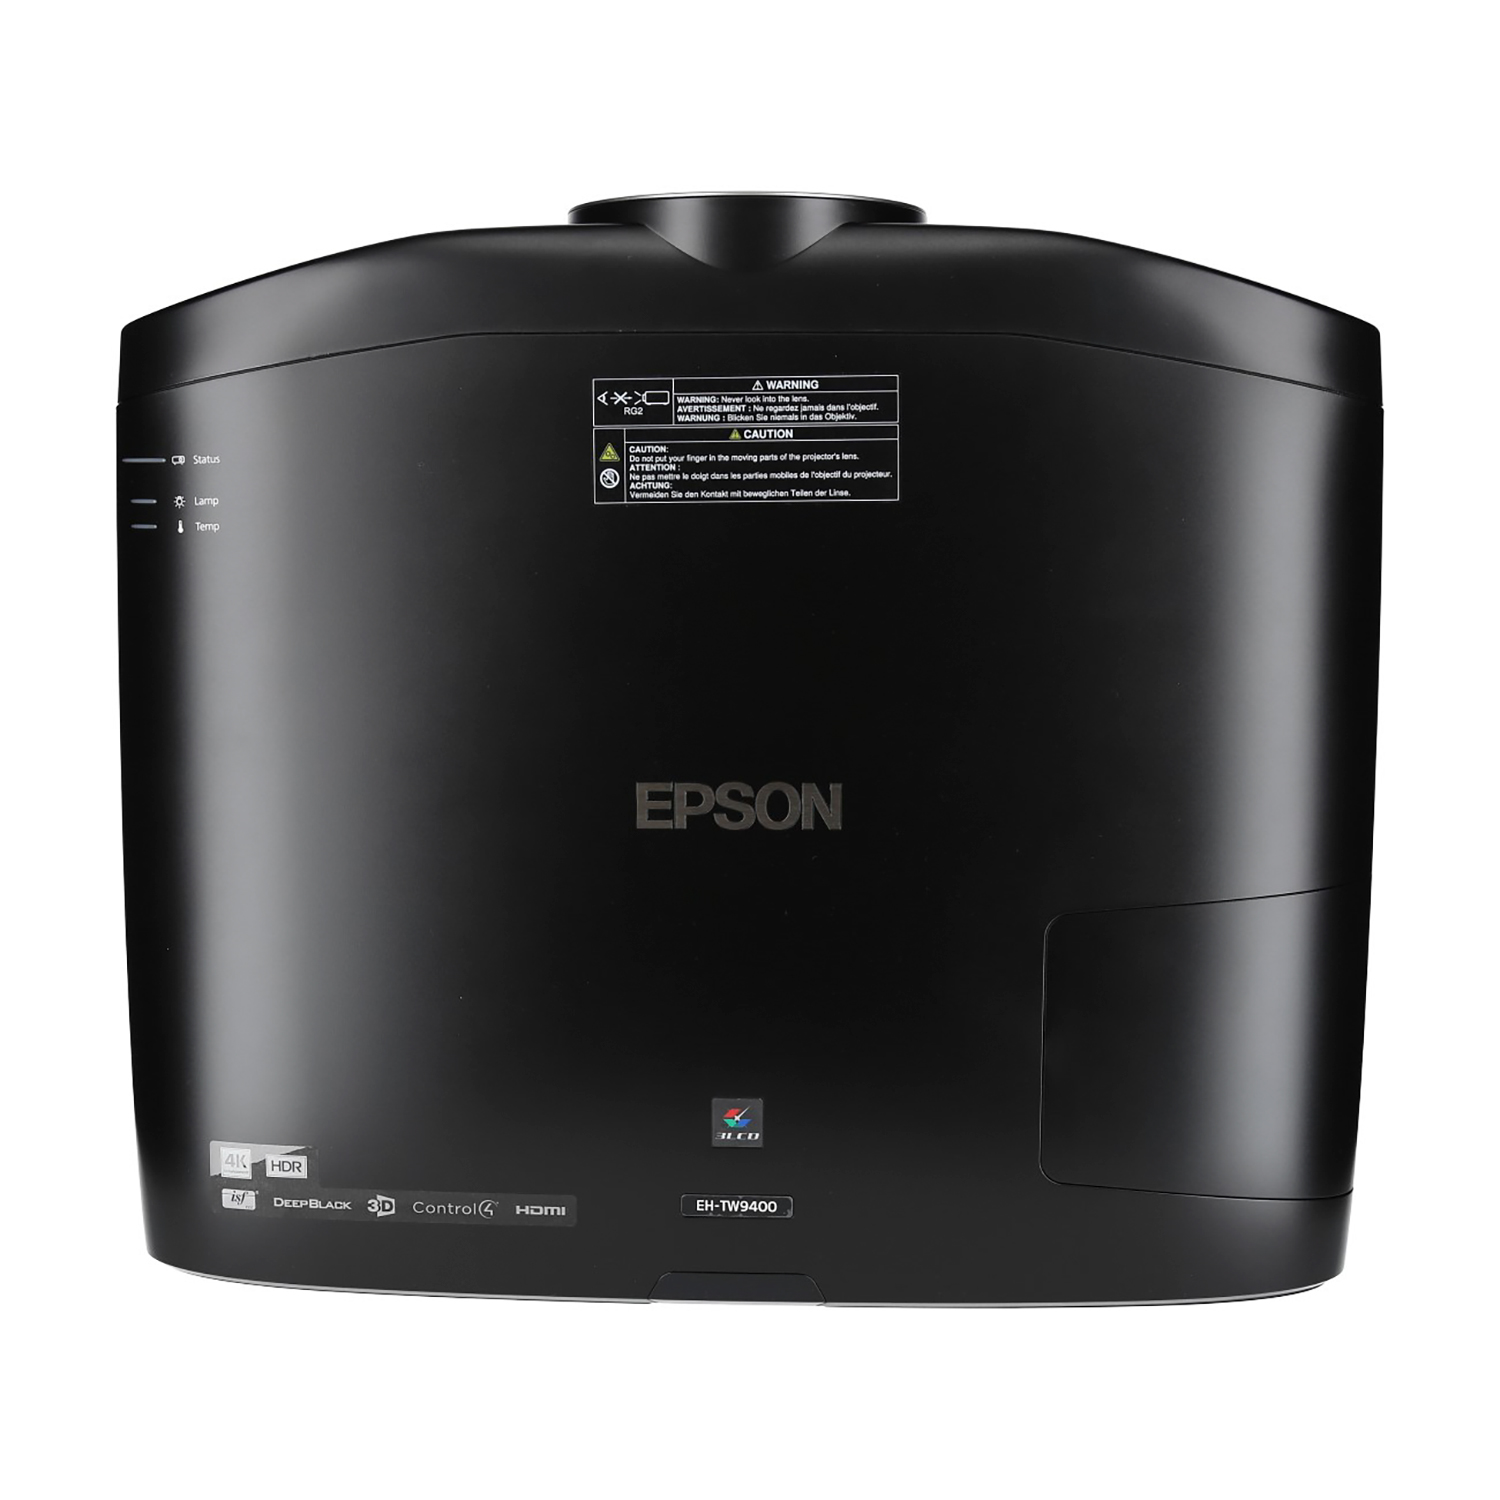 EPSON EH-TW9400 Beamer(Full-HD, 3D)